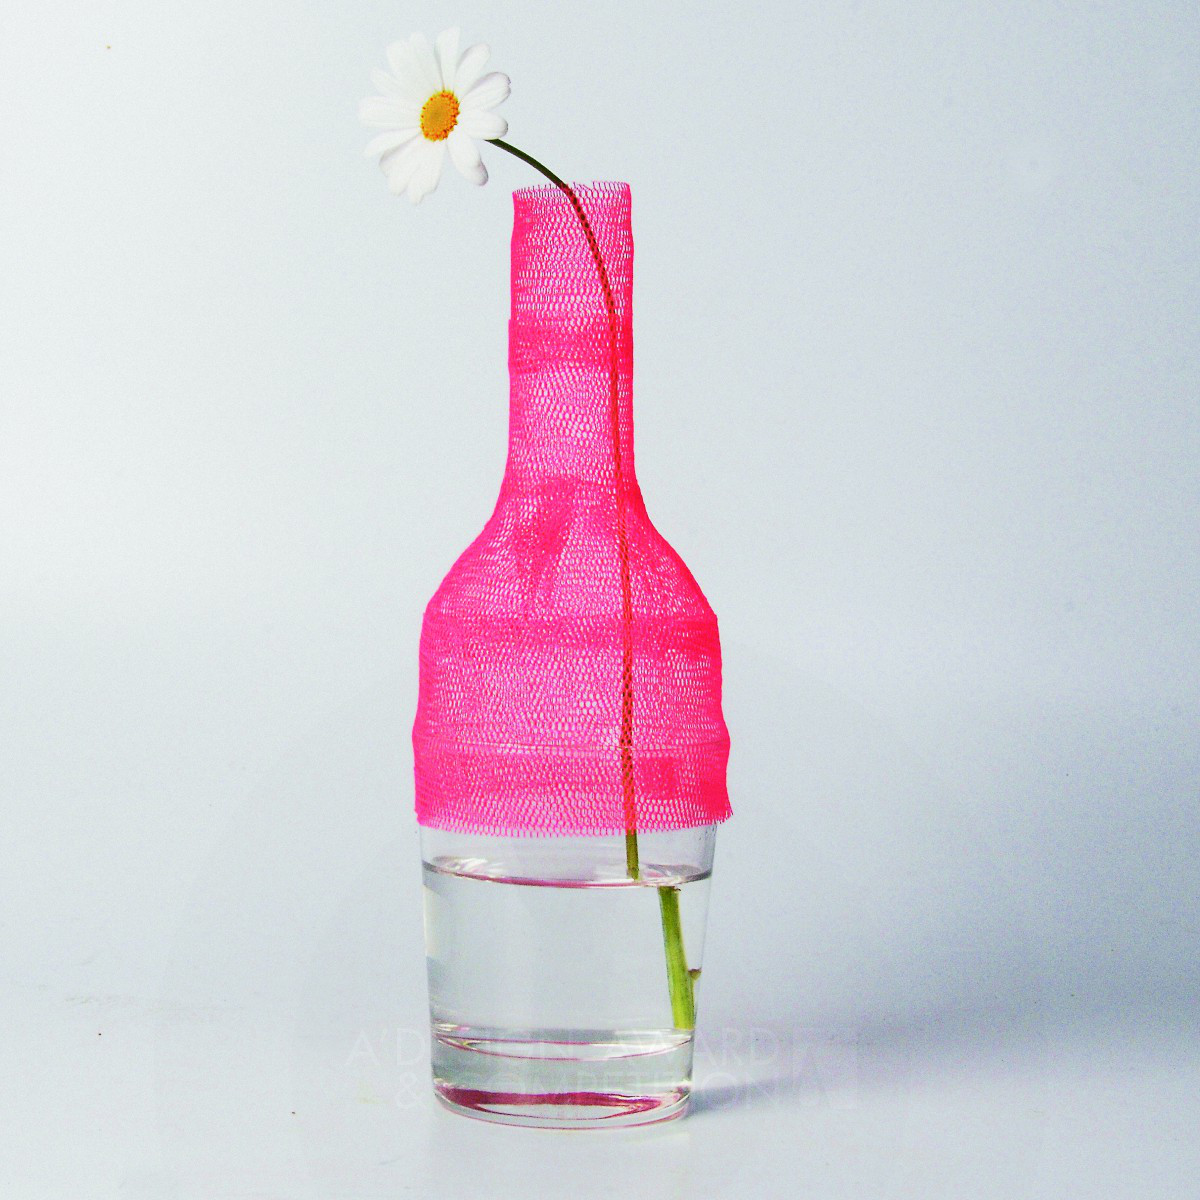 Fragile Flower vase by Takahiro Yamamoto